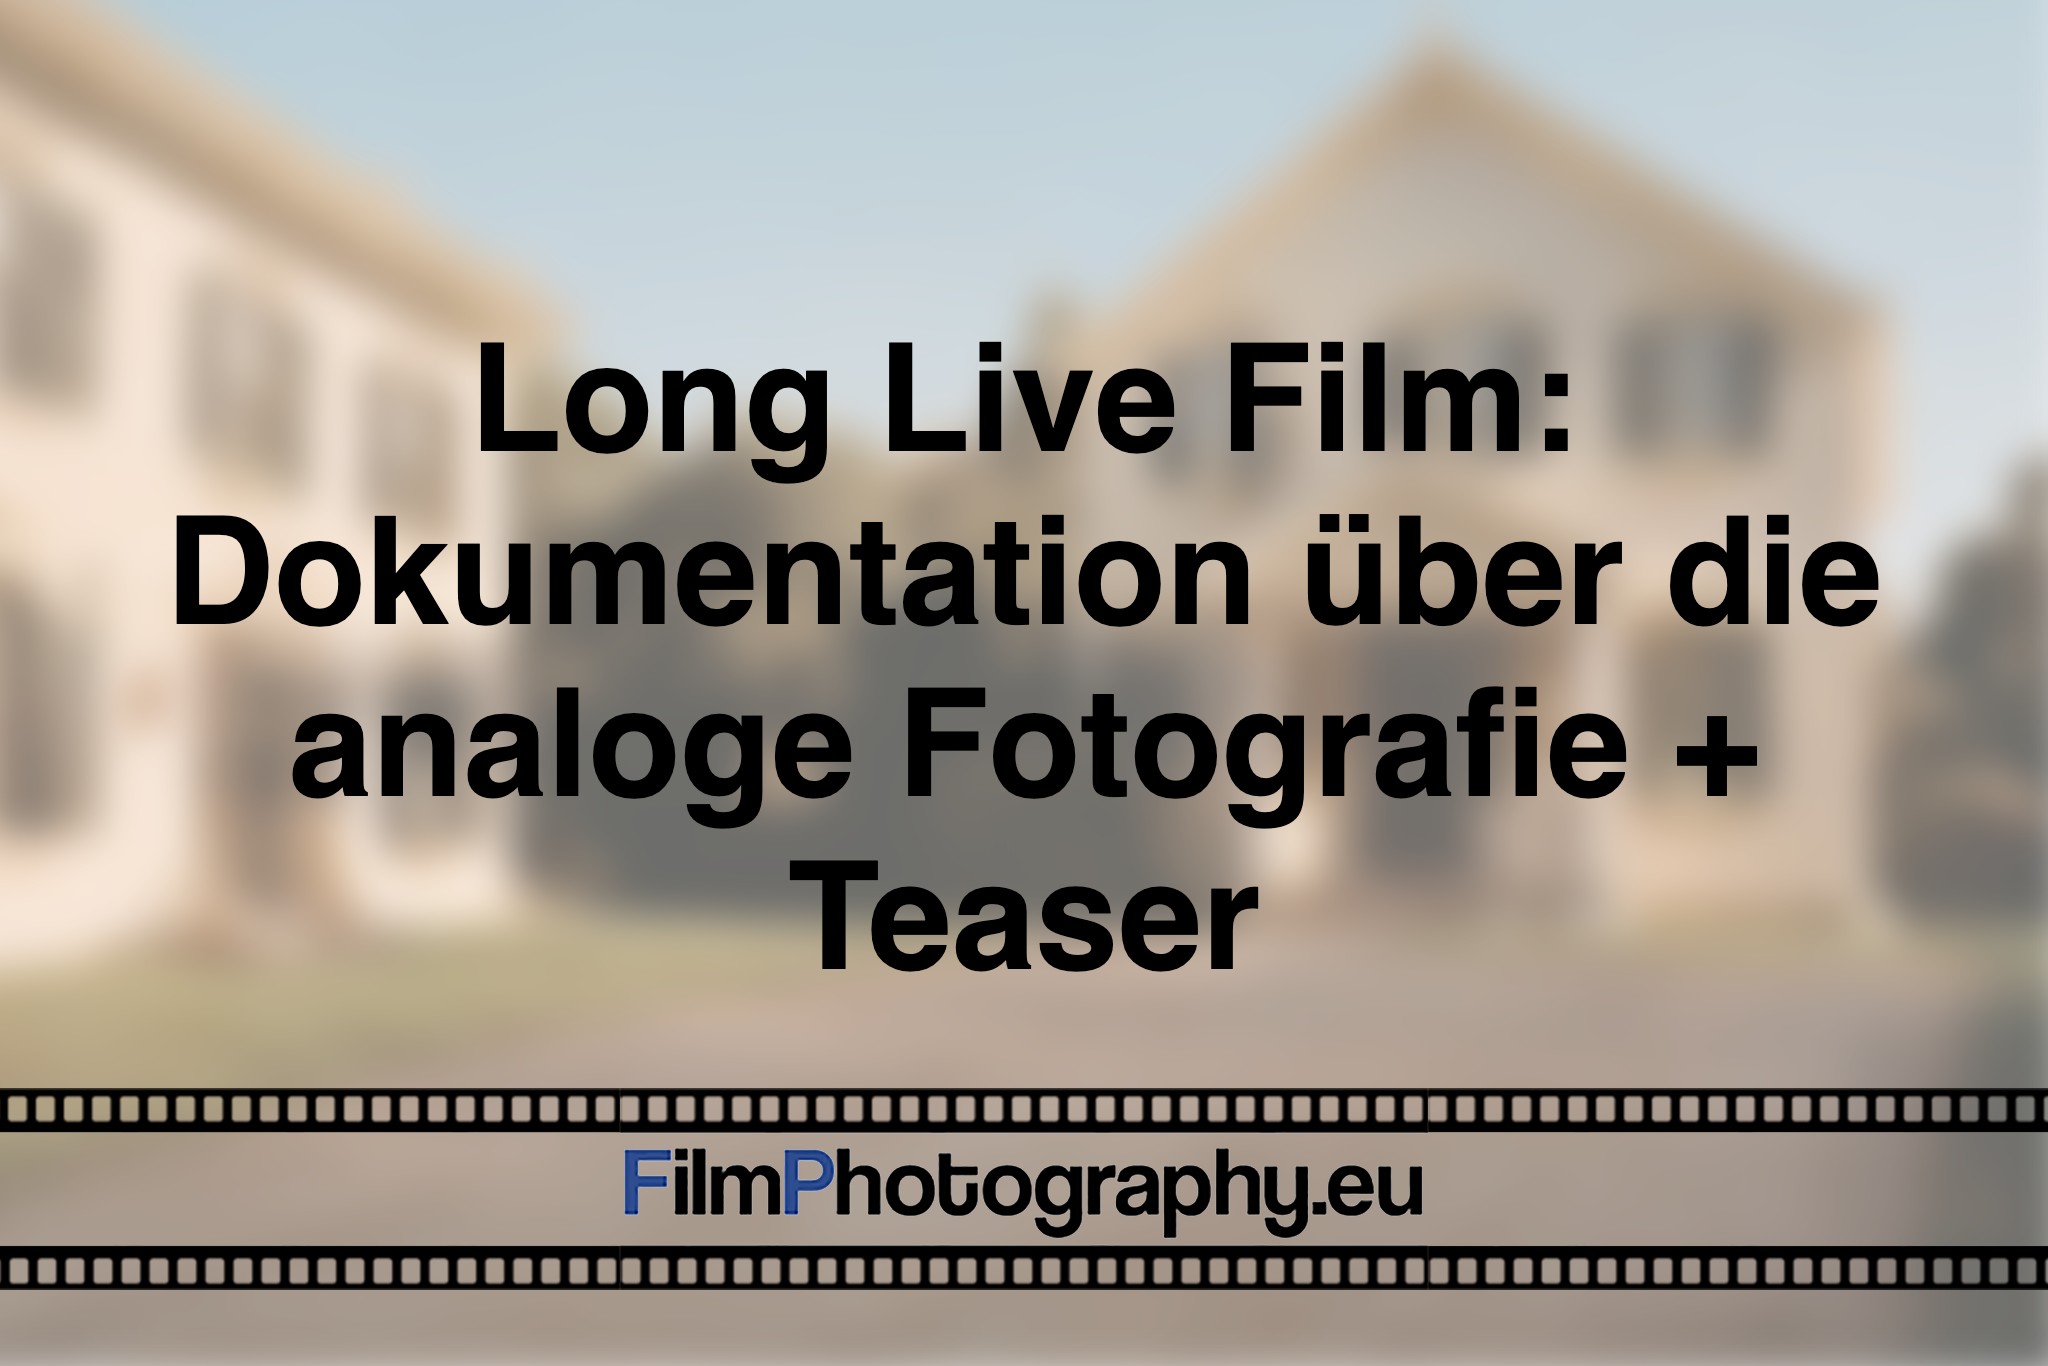 long-live-film-dokumentation-ueber-die-analoge-fotografie-teaser-foto-bnv